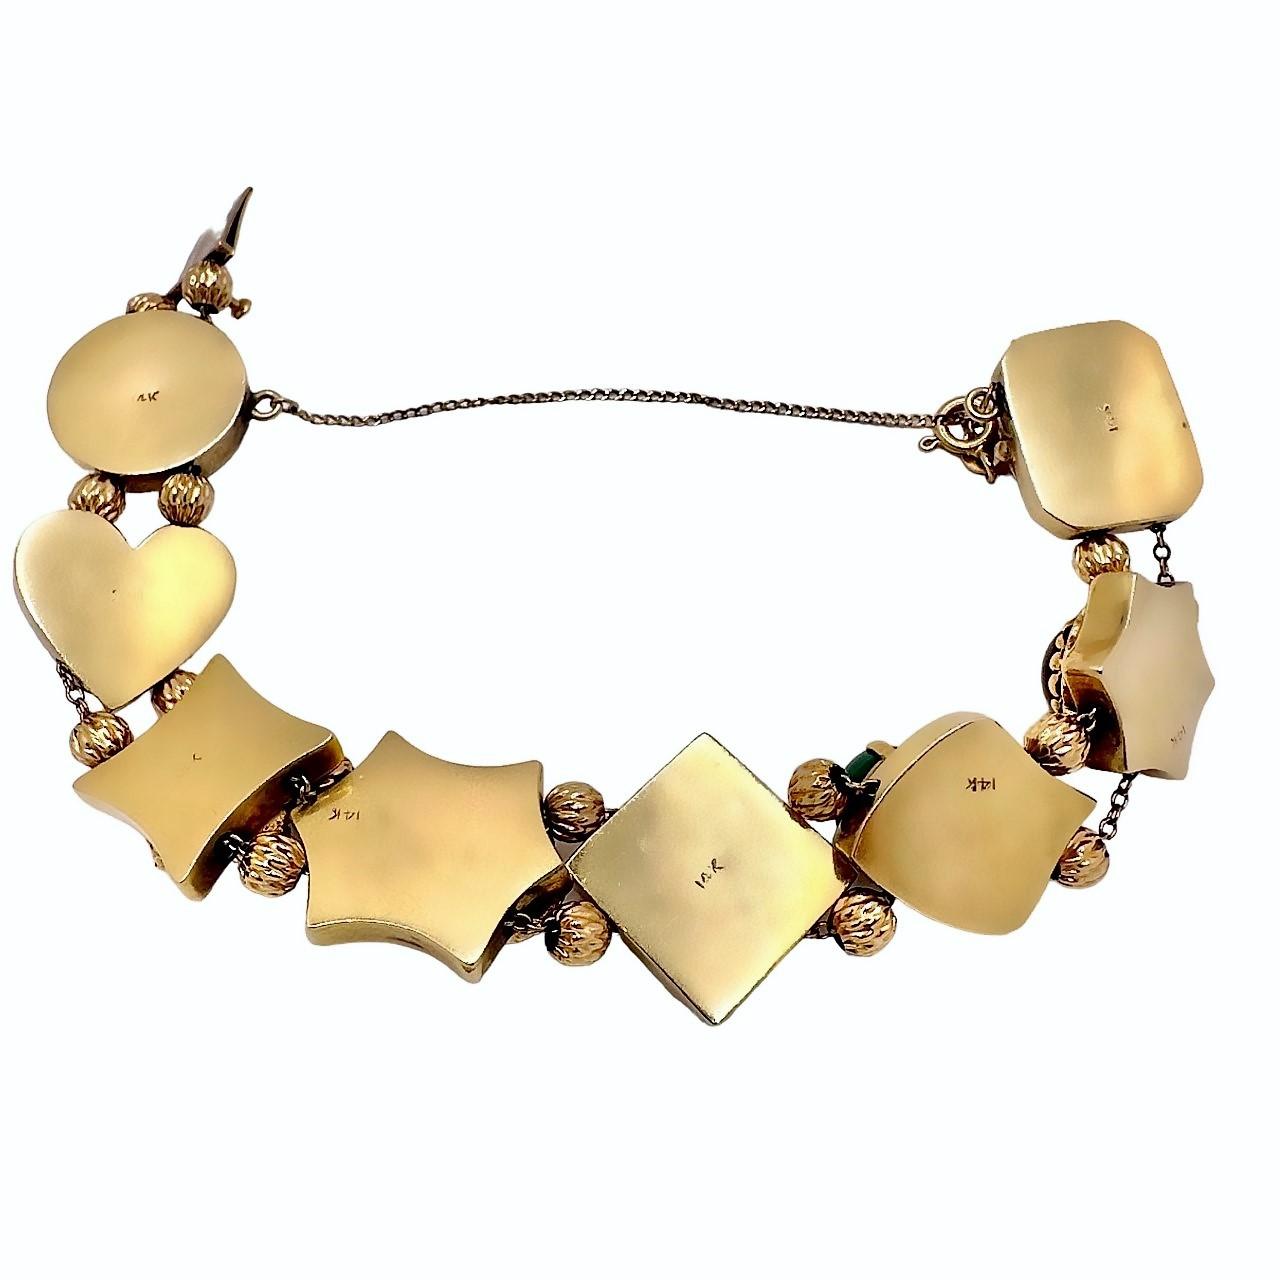 Ce bracelet à glissière du milieu du XXe siècle appartient à un genre de pièces similaires, toutes dérivées et créées en hommage aux glissières qui étaient principalement utilisées dans les colliers pour dames de l'époque victorienne. Elle est